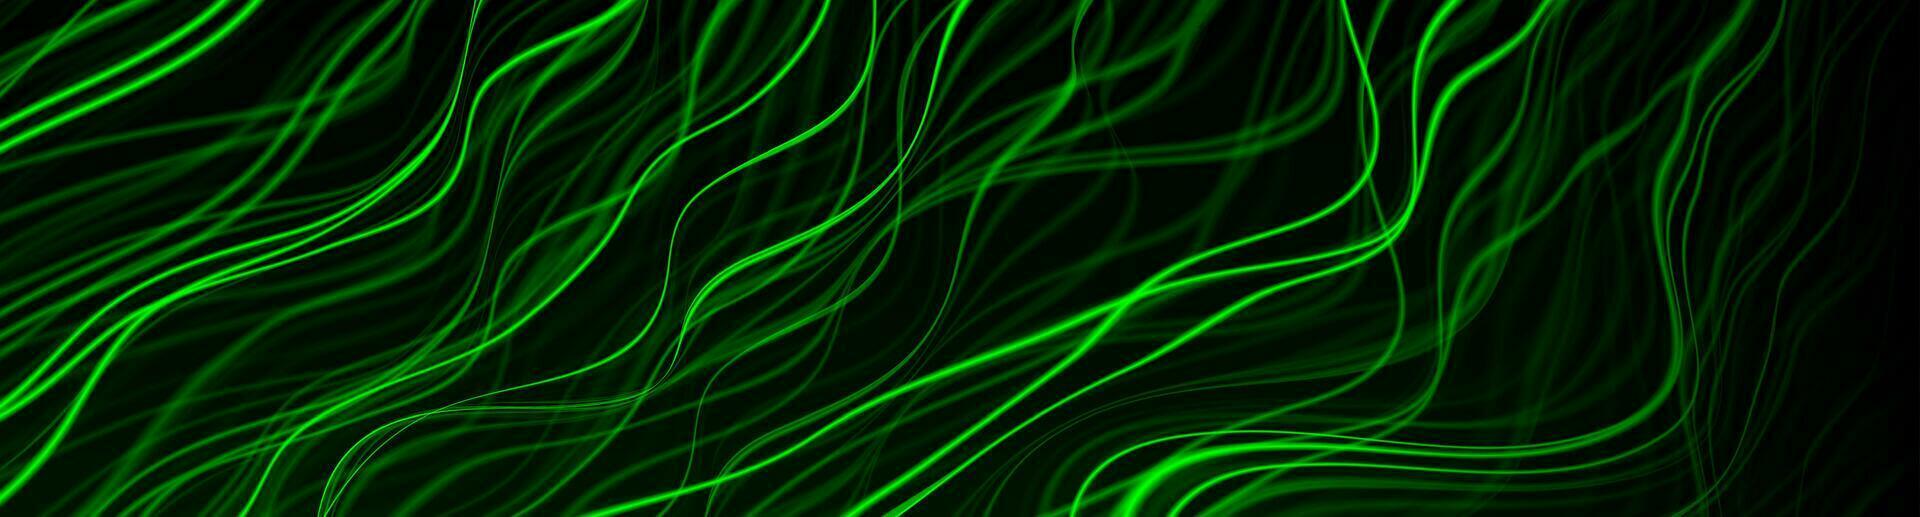 Grün leuchtend glühend Flüssigkeit wellig Linien abstrakt Neon- Beleuchtung Hintergrund vektor